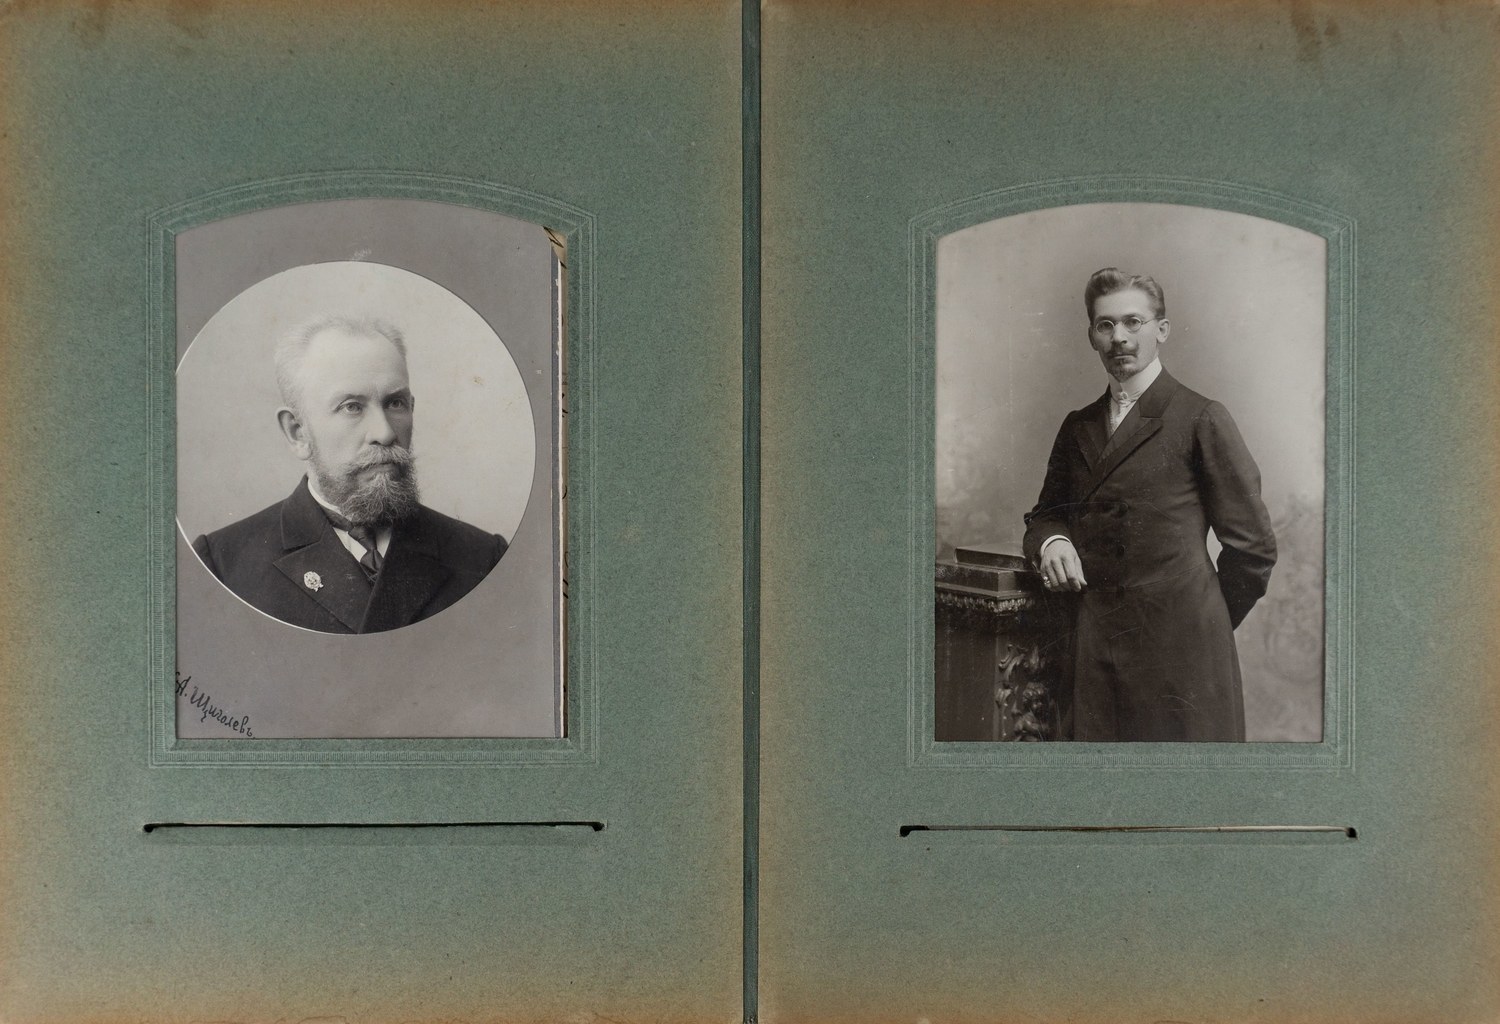 43 фотографии из семейного архива в альбоме. Россия, вторая половина XIX - первая четверть XX века.